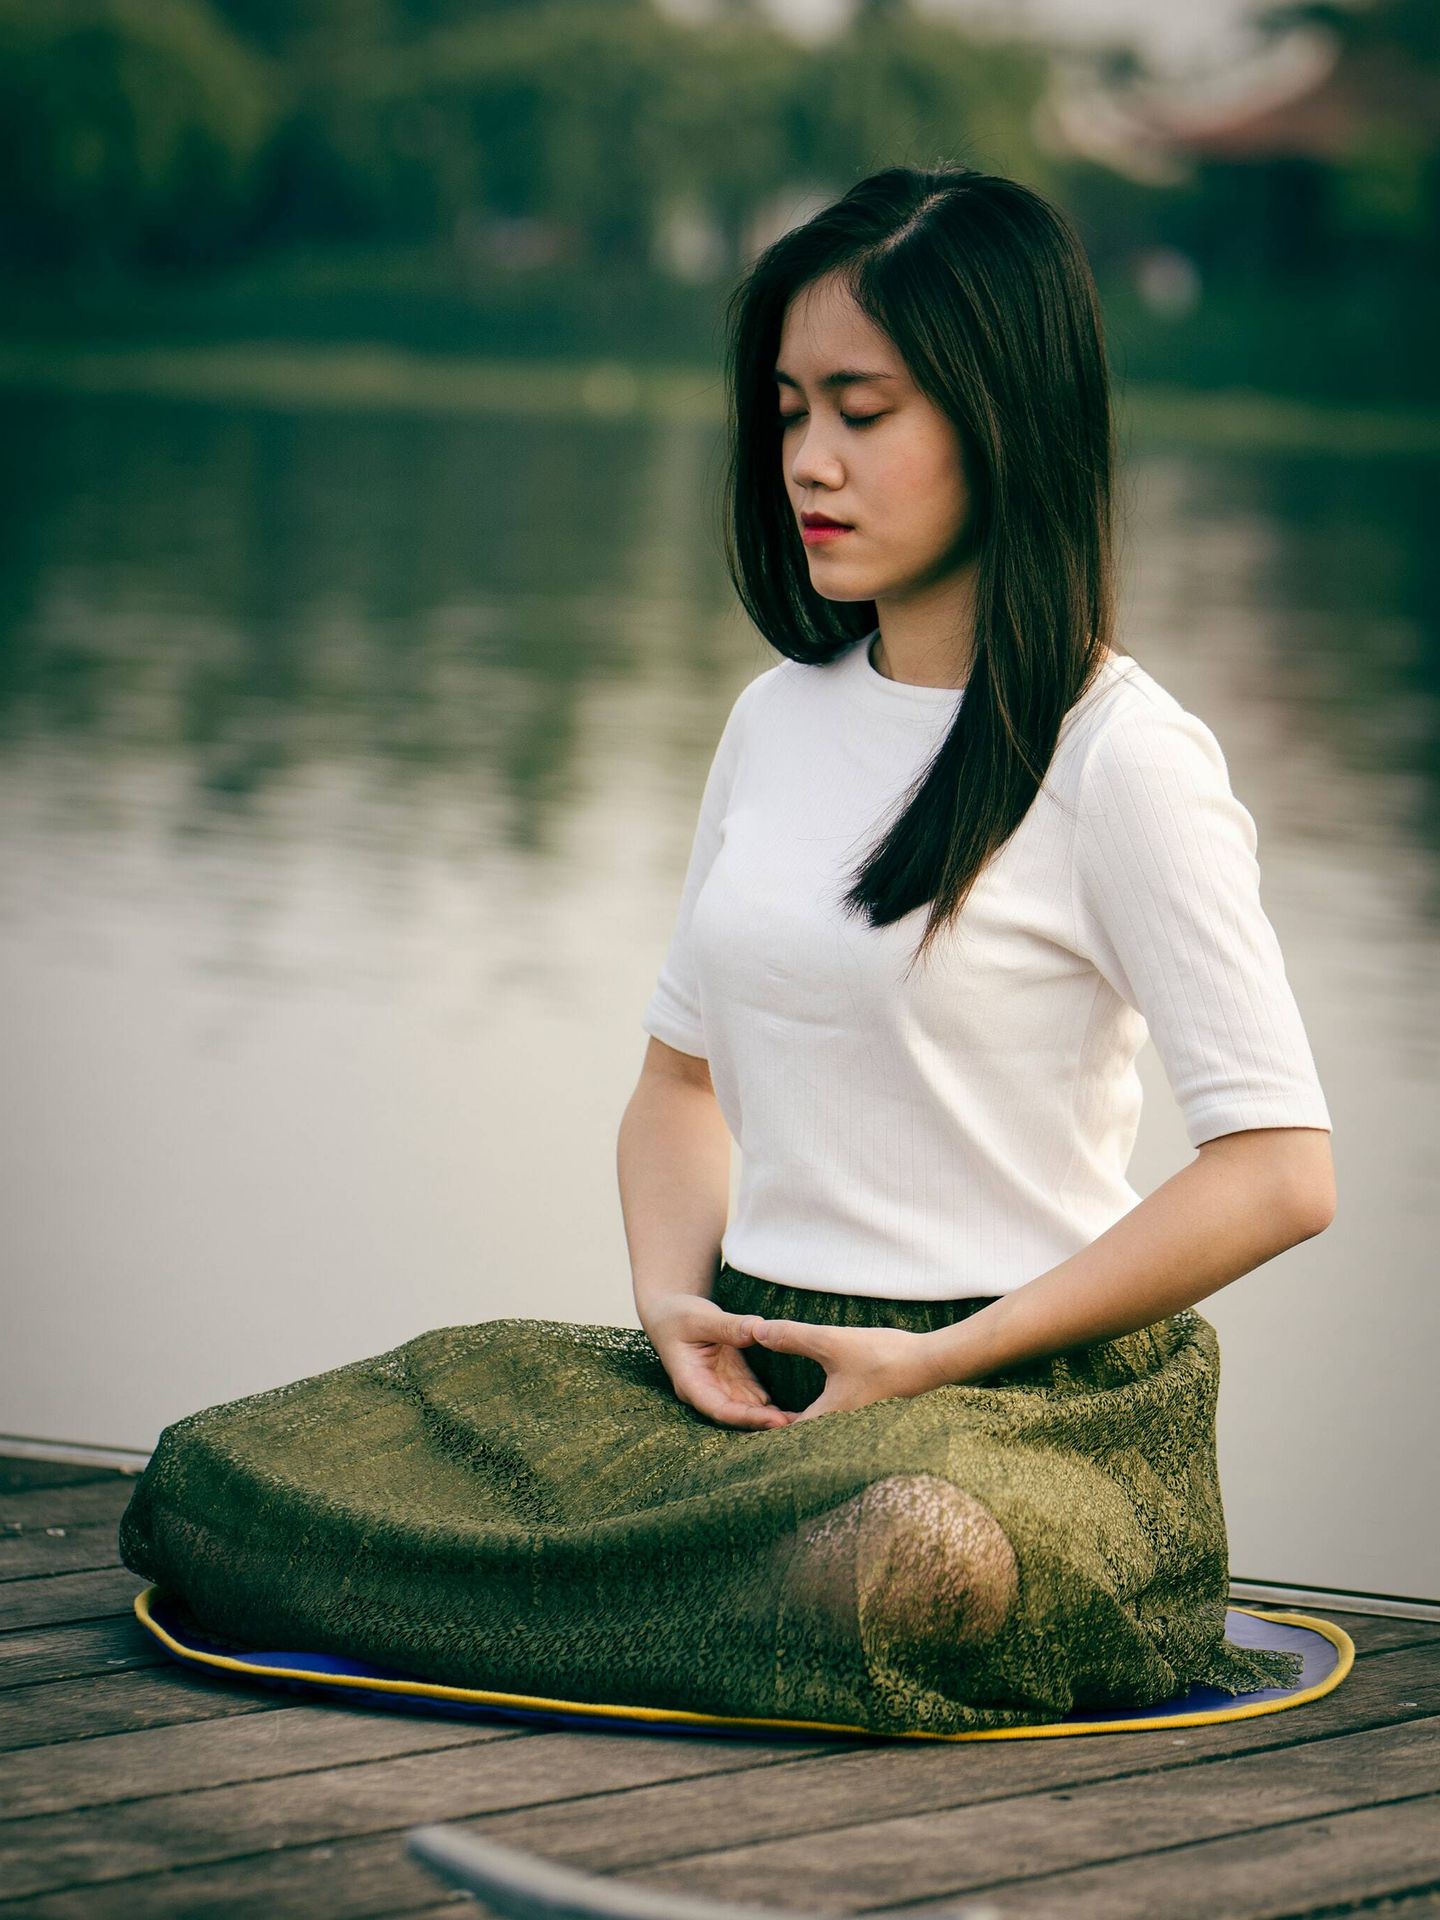 Cambios que la meditación provoca en el cerebro. (Unsplash/ Le Minh Phuong)